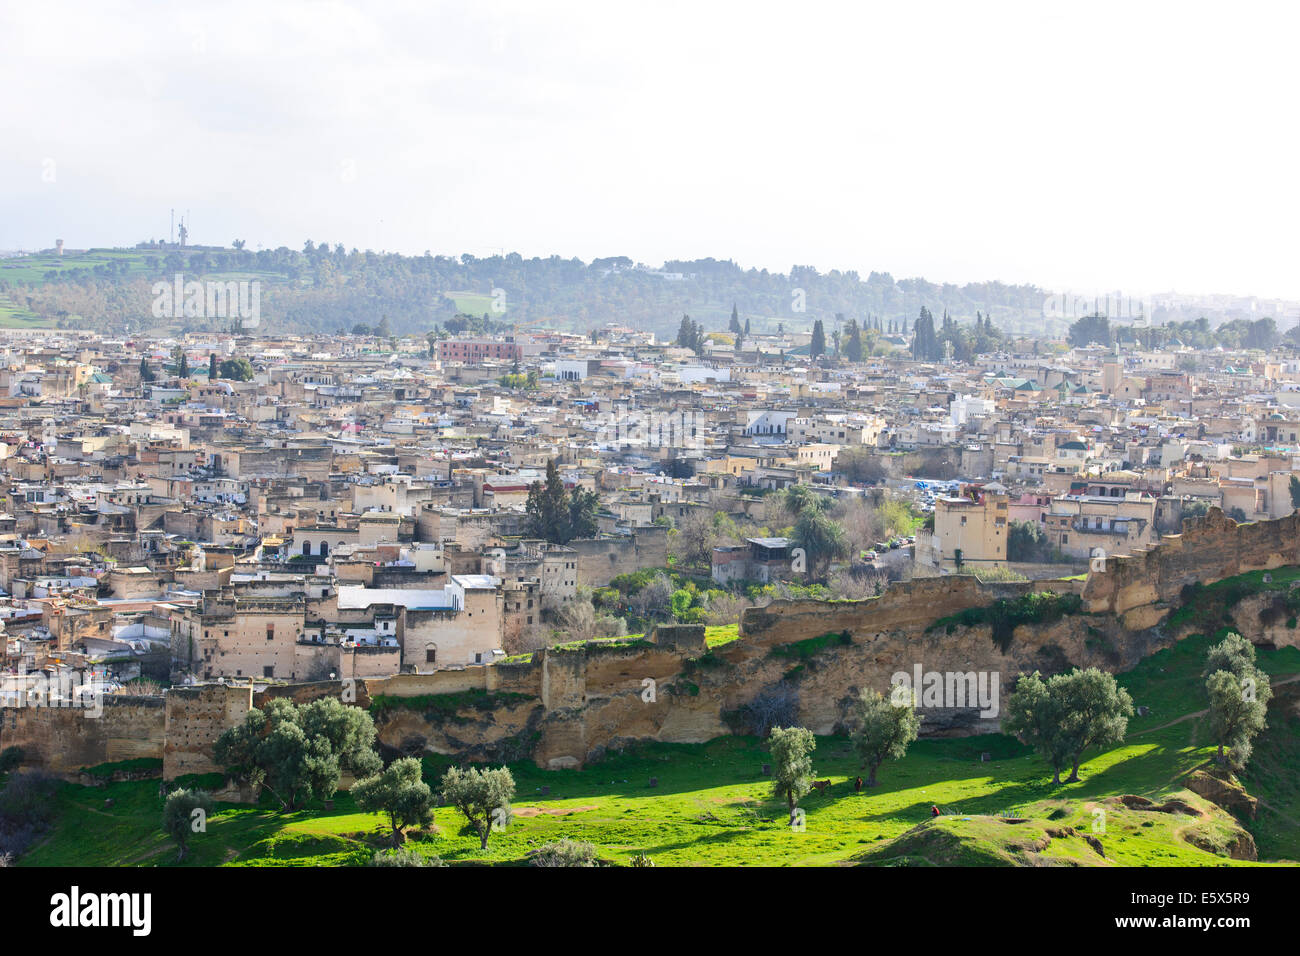 Skyline der Stadt Fez nach Ost und West, Souk, umgebenden Hügeln, Stadtmauern, jüdischer Friedhof, Moscheen, Minarette, ehemalige Hauptstadt, Marokko Stockfoto